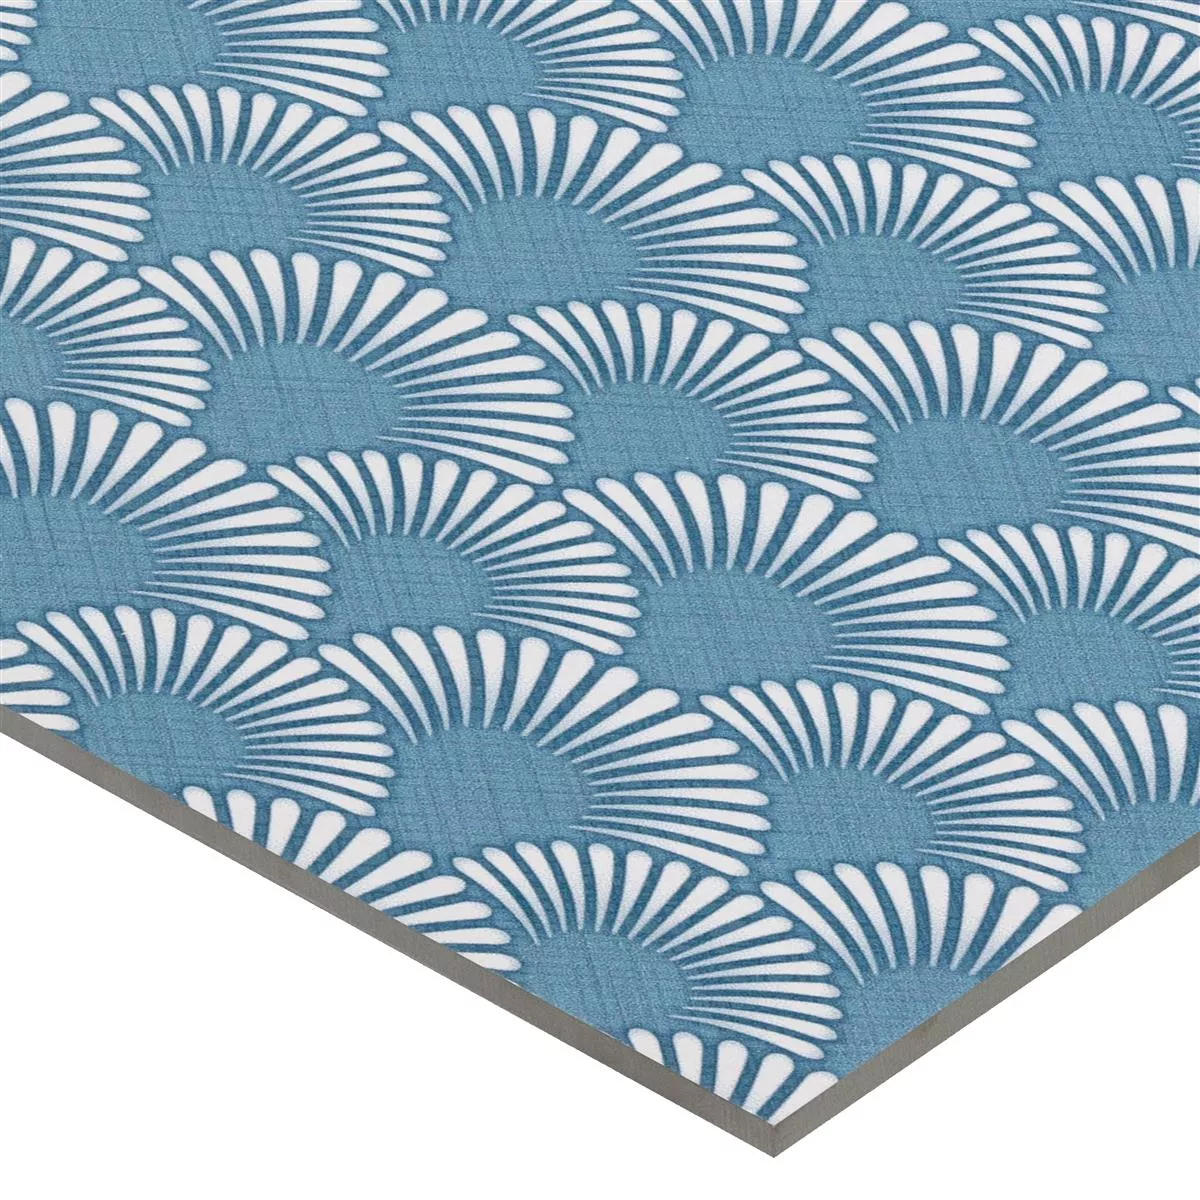 Vzorek Podlahové Dlaždice Cementový Vzhled Wildflower Modrá Dekor 18,5x18,5cm